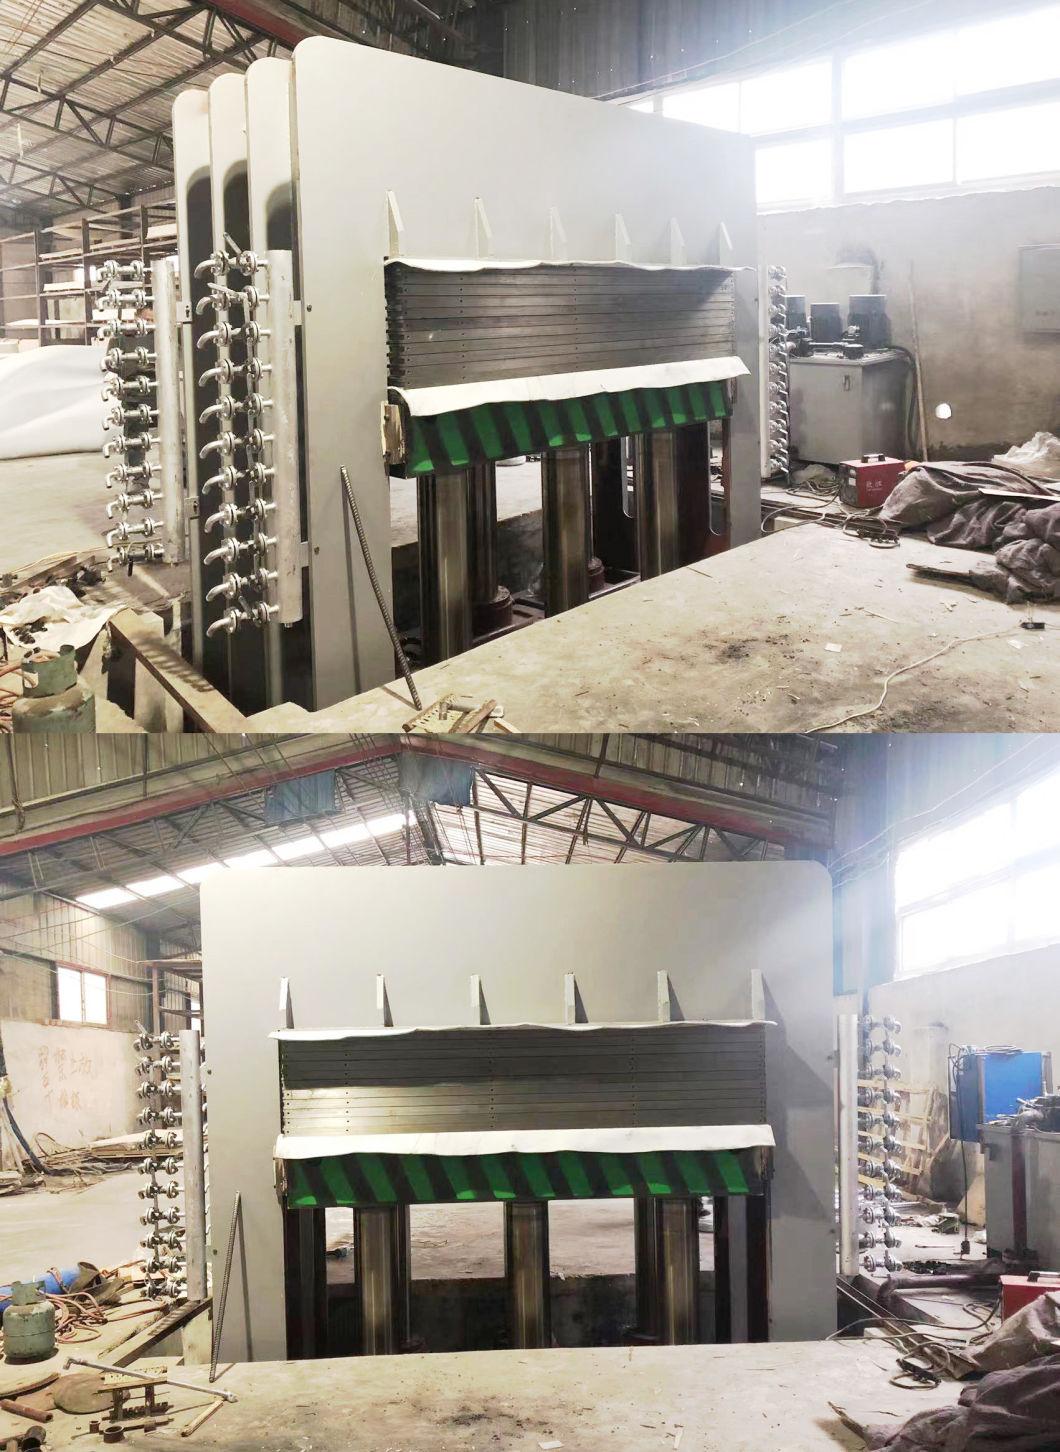 Linyi Jianzhong Plywood Making Hot Press Machine Heating Press Machinery